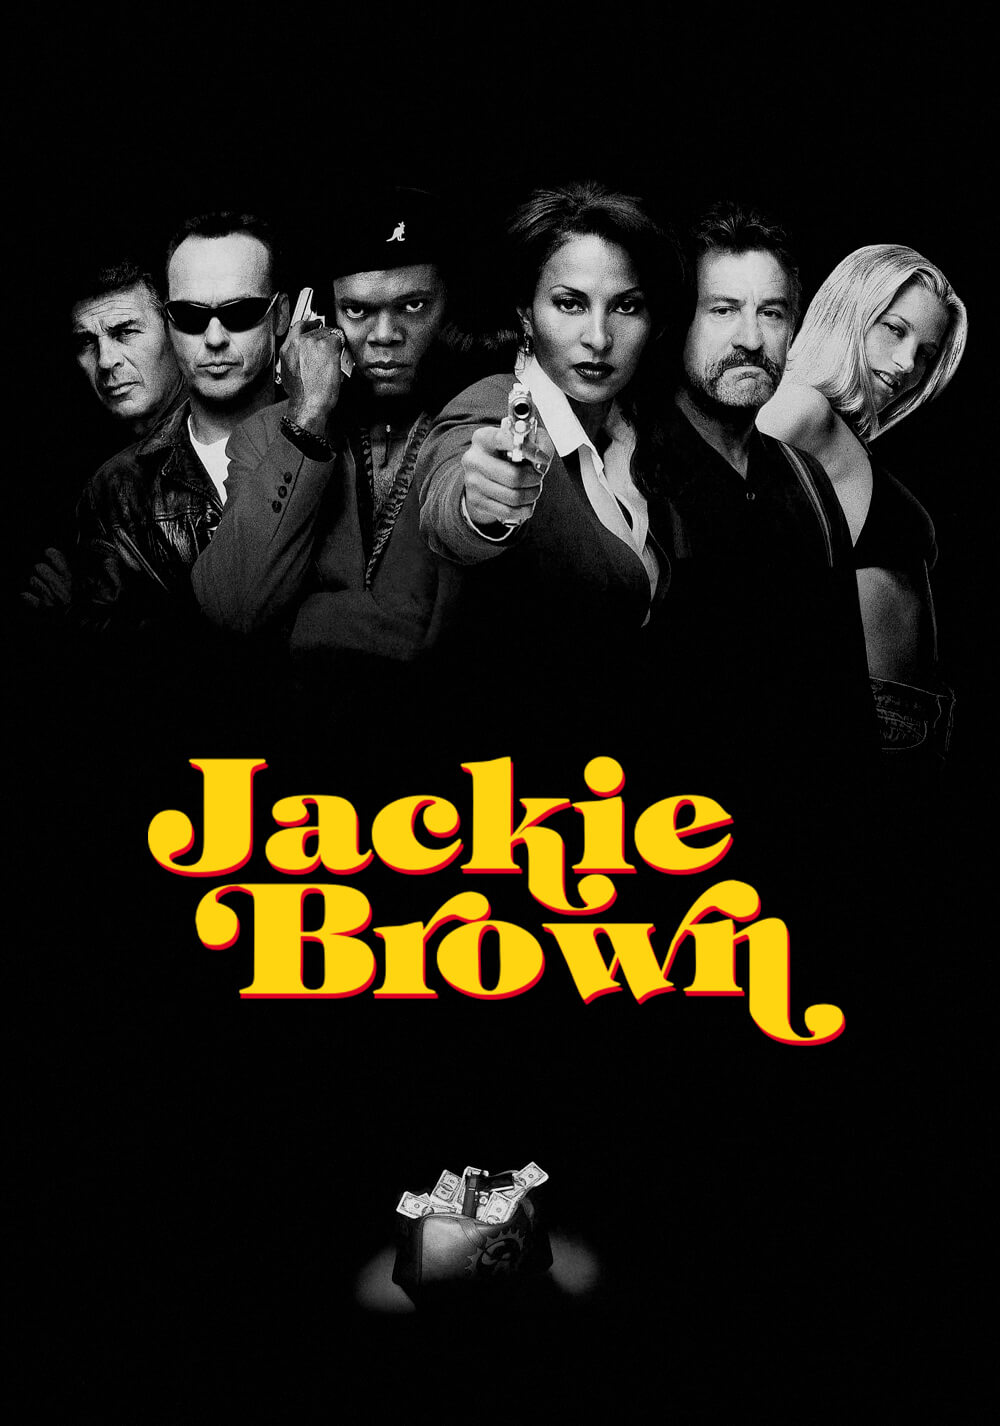 جکی براون (Jackie Brown)